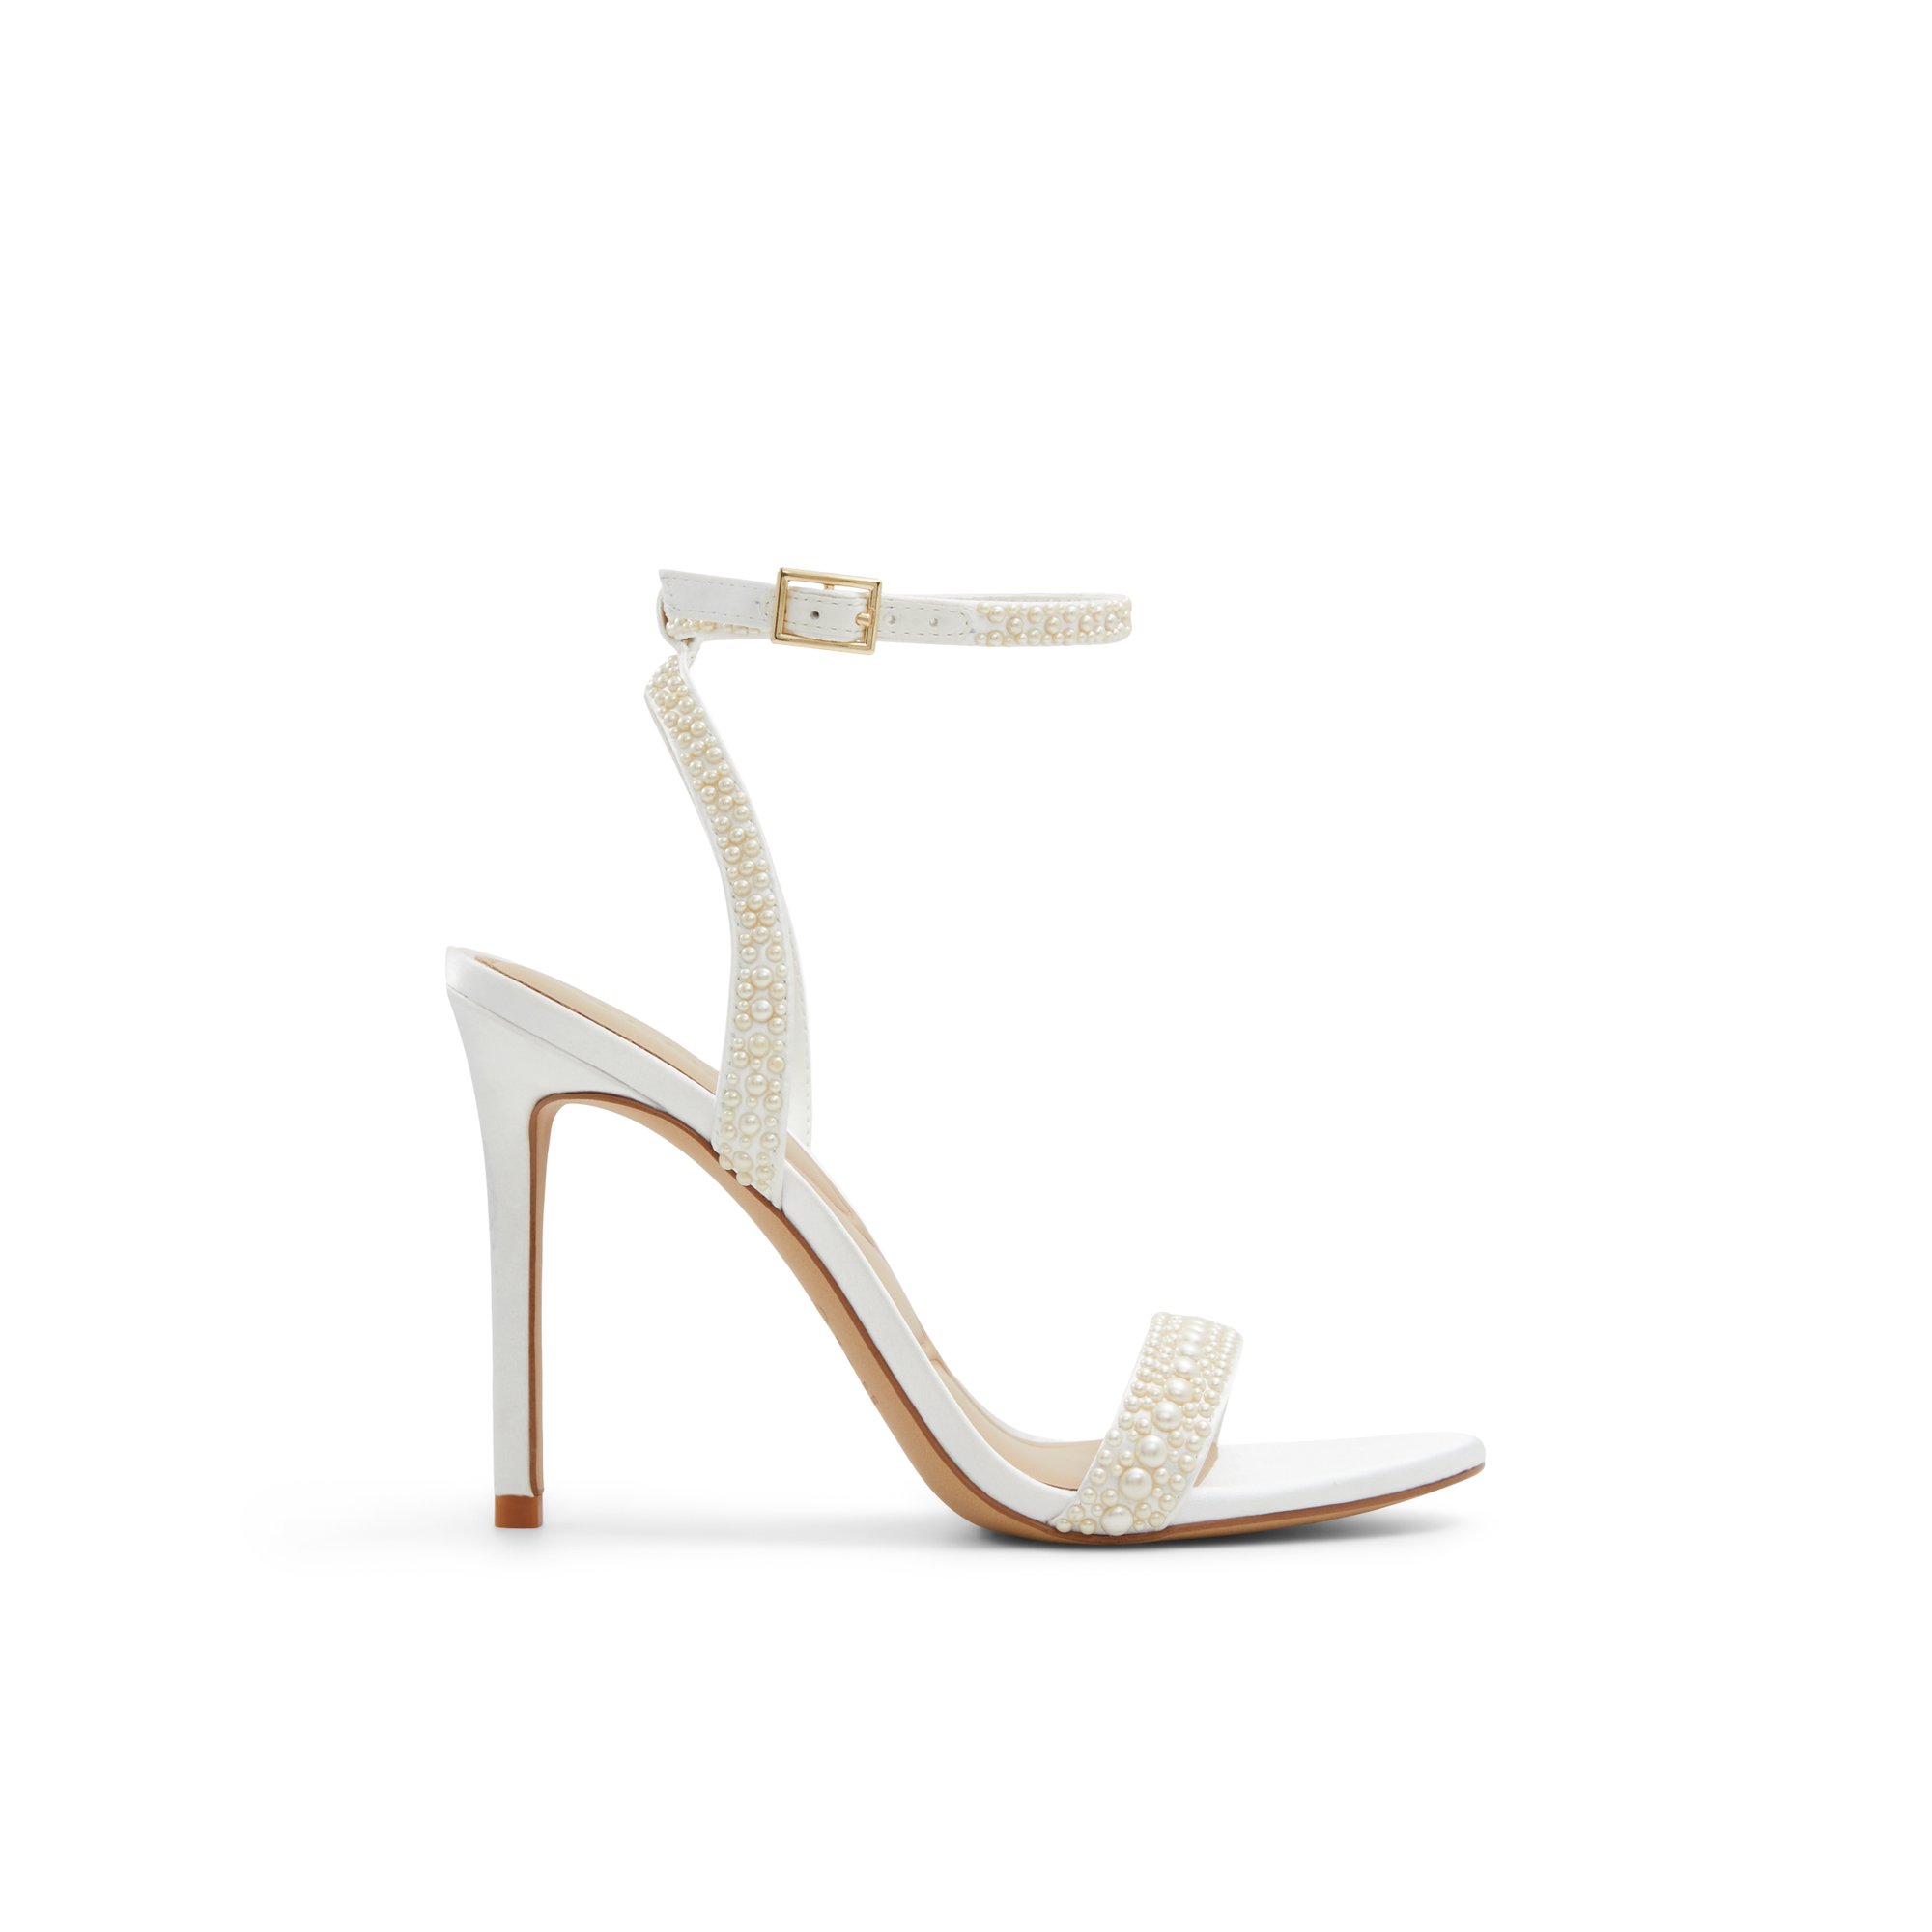 ALDO Perlea - Women's Strappy Sandal Sandals - White